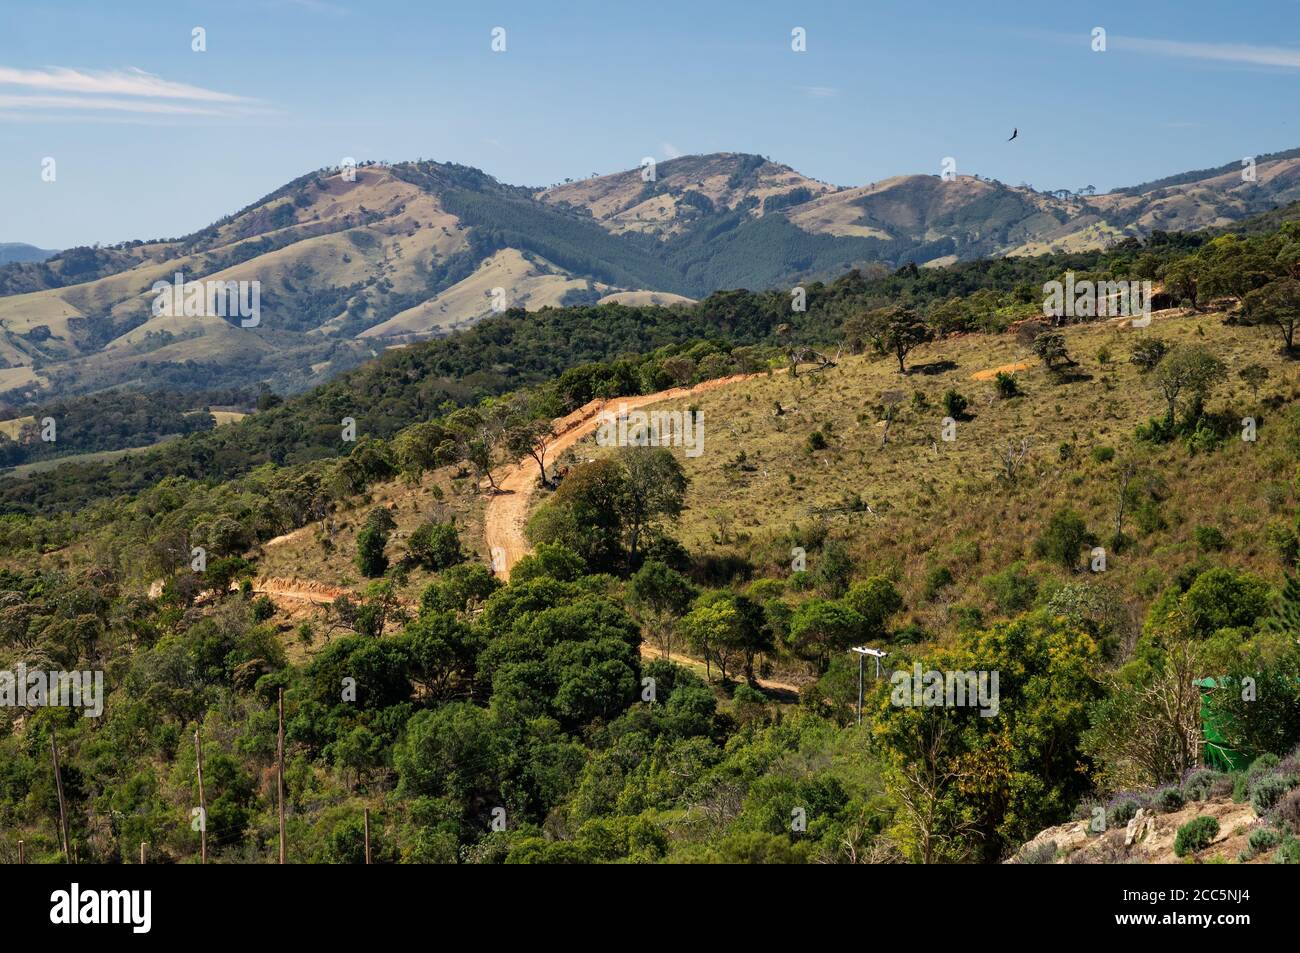 Vista dall'azienda agricola o Lavandario del paesaggio montuoso di Cunha con strade sterrate che corrono sulle colline e intorno ai campi di pascolo. Foto Stock